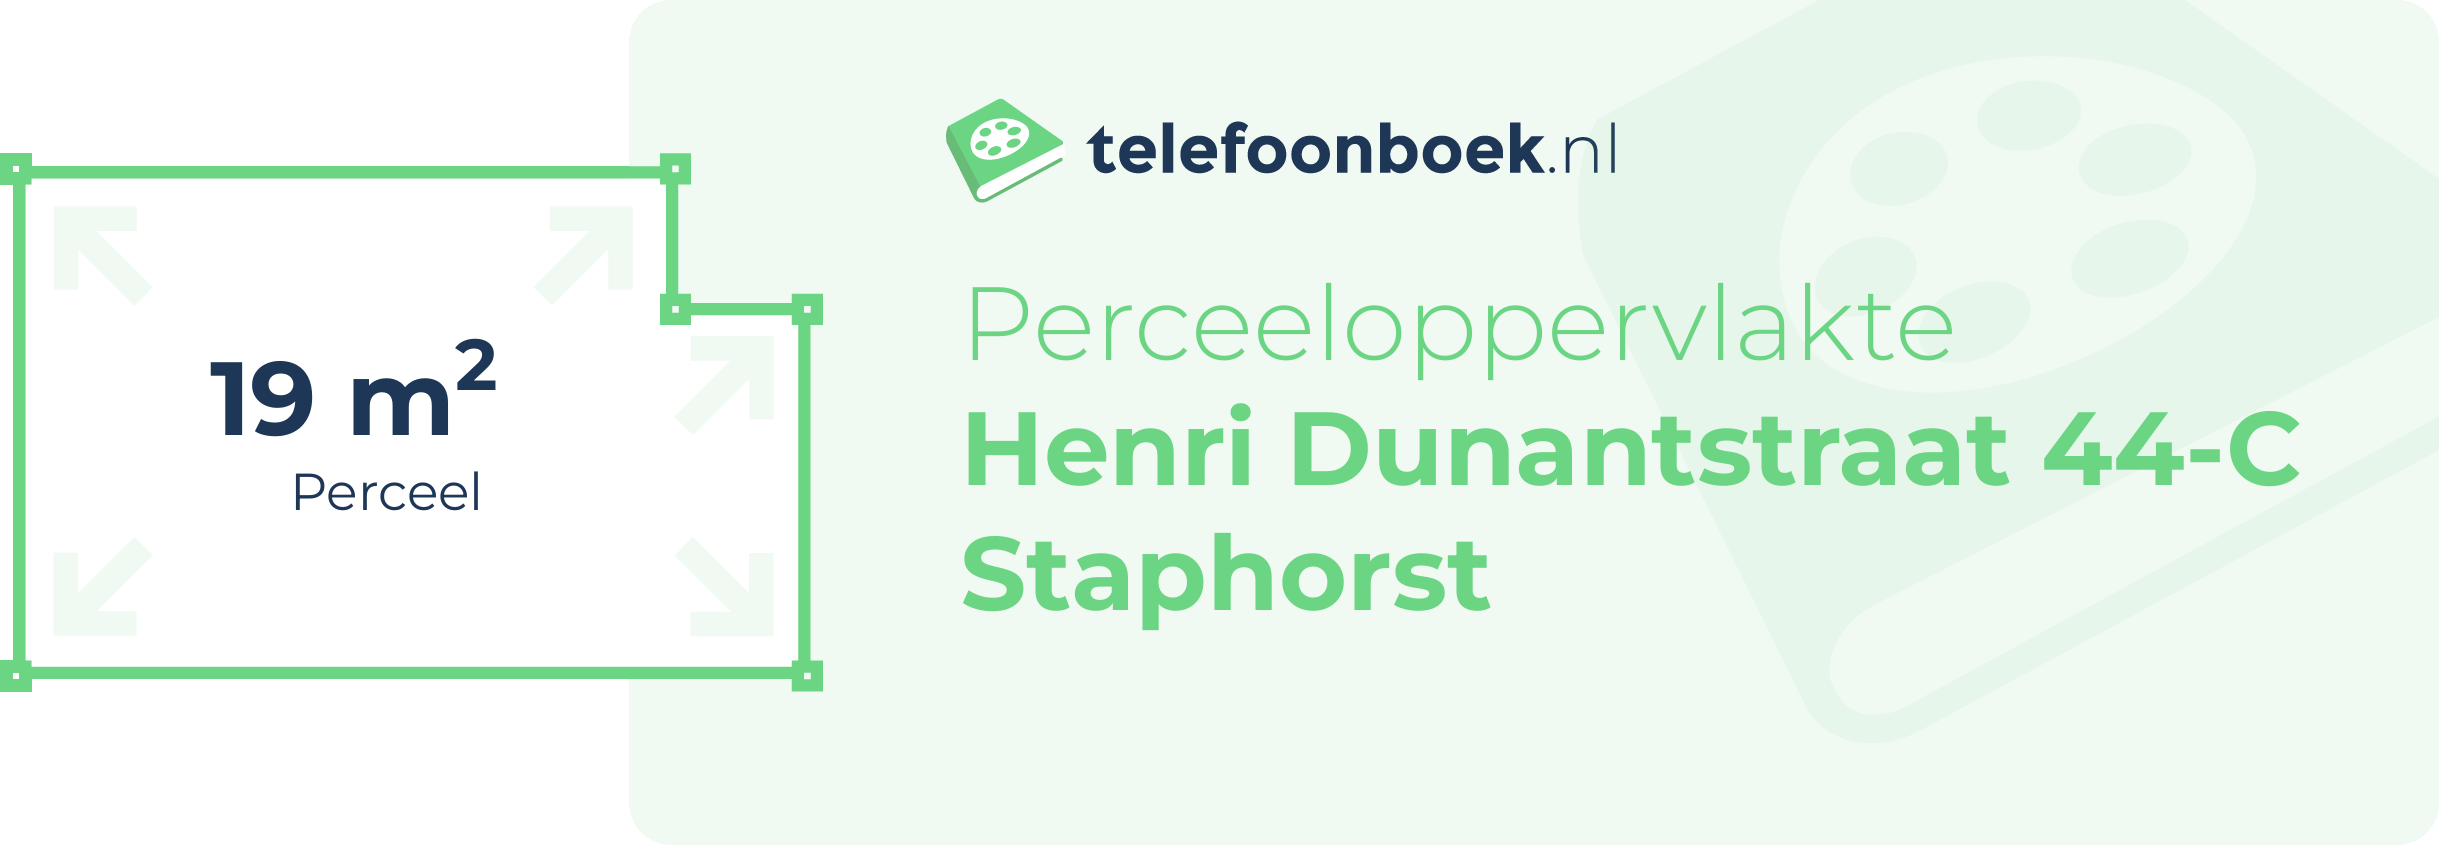 Perceeloppervlakte Henri Dunantstraat 44-C Staphorst